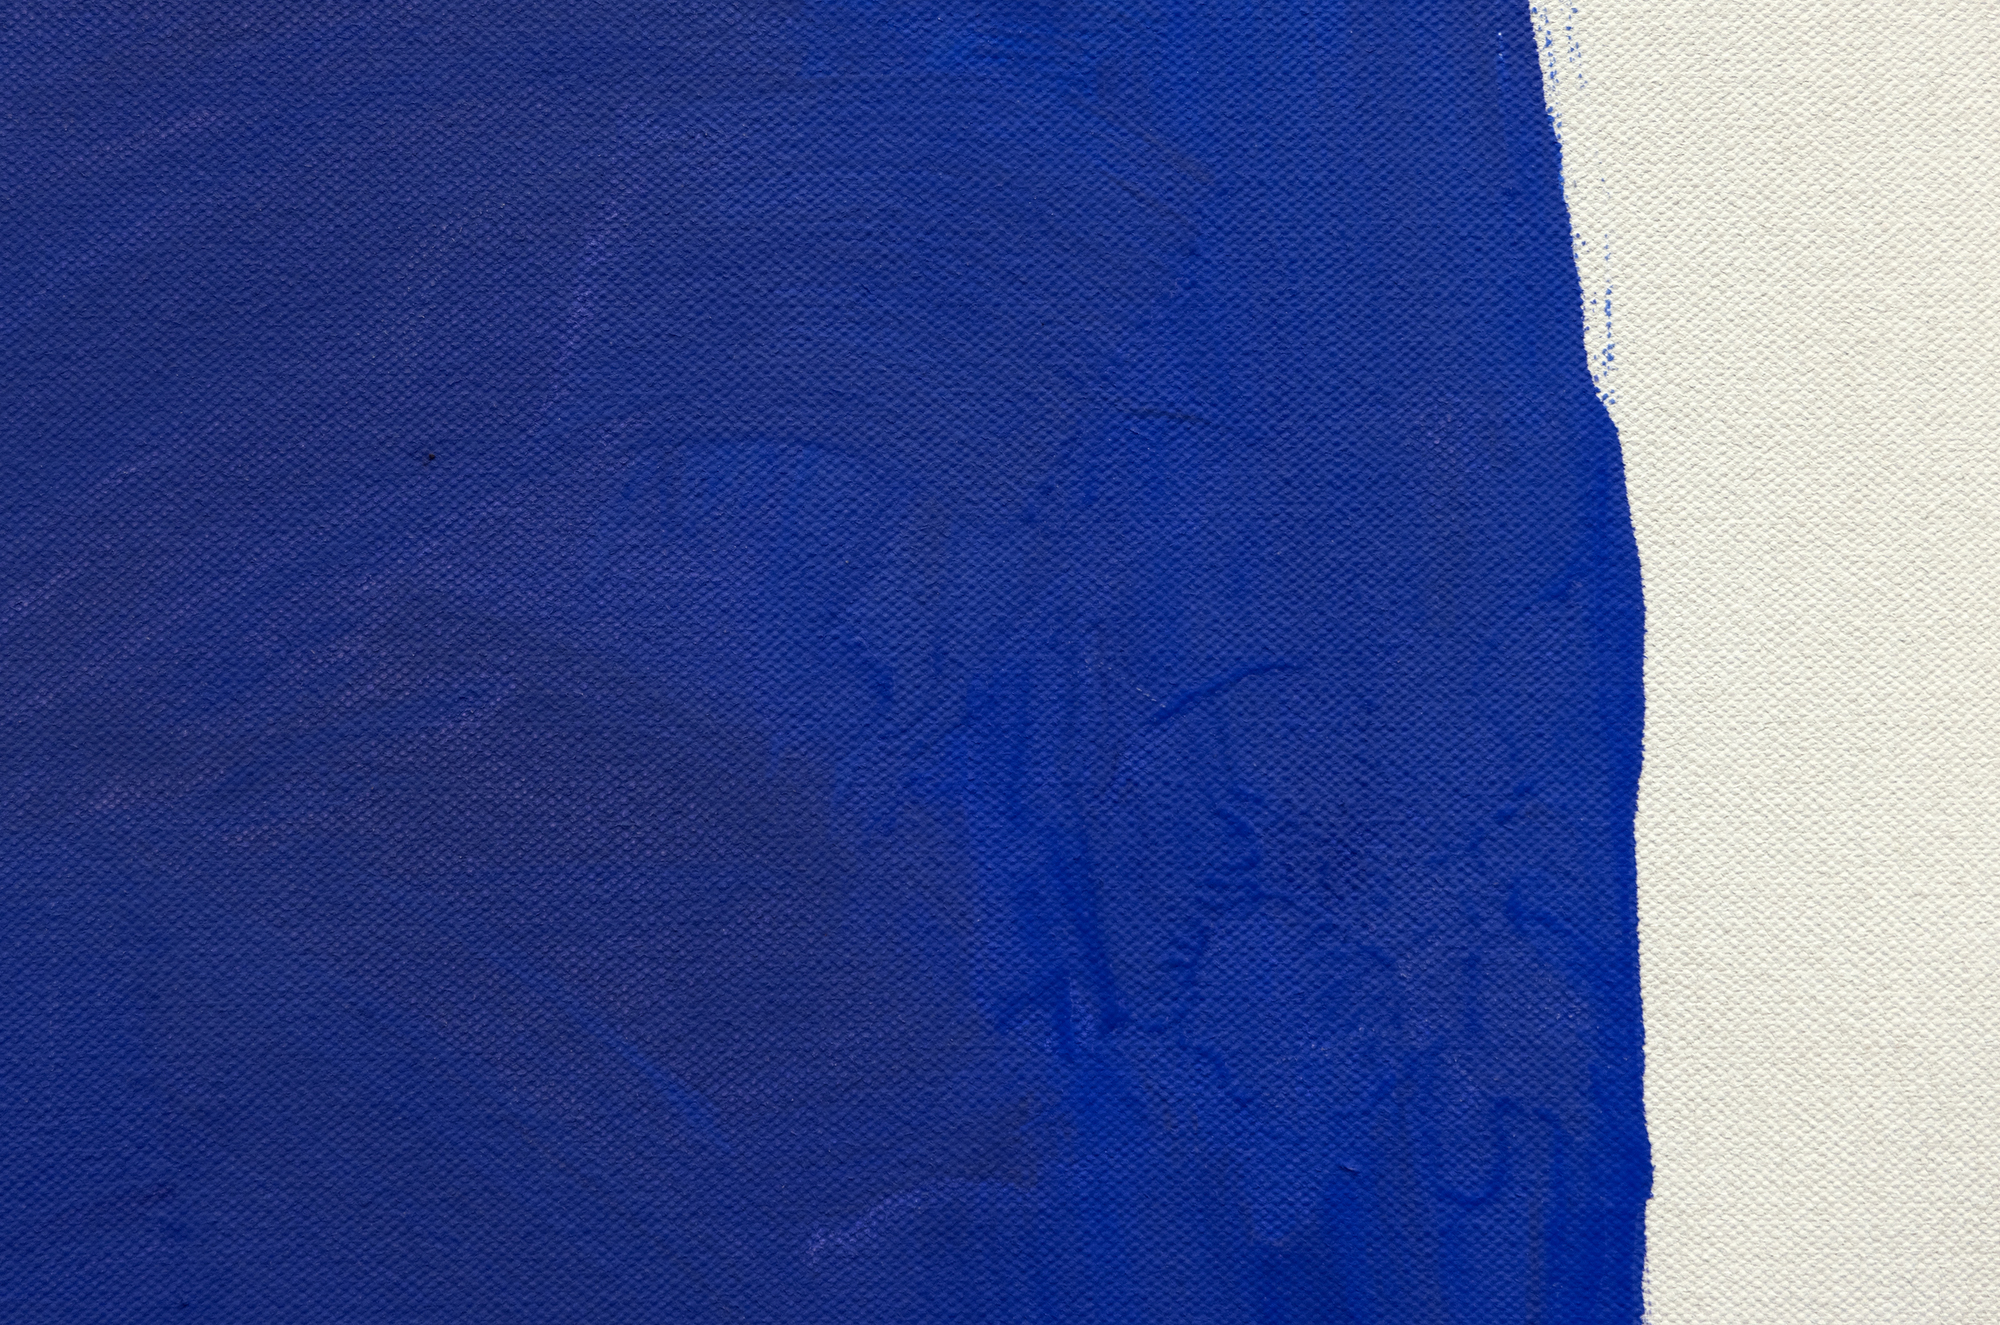 De la fin des années 1950 au milieu des années 1960, les premières contributions de Ray Parker à la peinture Color Field se distinguent remarquablement par leur qualité vibrante et fraîche. Parker disposait deux ou plusieurs blocs de couleur robustes et rugueux en utilisant une technique vigoureuse et brusque sur de grandes toiles préparées avec du gesso. Ces blocs, rendus dans des couleurs saturées mais subtilement vibrantes, font preuve d&#039;une énergie distincte. Si les compositions de Parker peuvent rappeler celles de Rothko, la manière dont la couleur est délivrée - solidement et vigoureusement - les distingue. Tout en conservant l&#039;ampleur et le dynamisme de l&#039;école de New York, l&#039;œuvre de Parker s&#039;en écarte en renonçant à l&#039;intensité émotionnelle souvent associée à l&#039;expressionnisme abstrait et en adoptant une vision du mouvement dépourvue de son pathos typique.